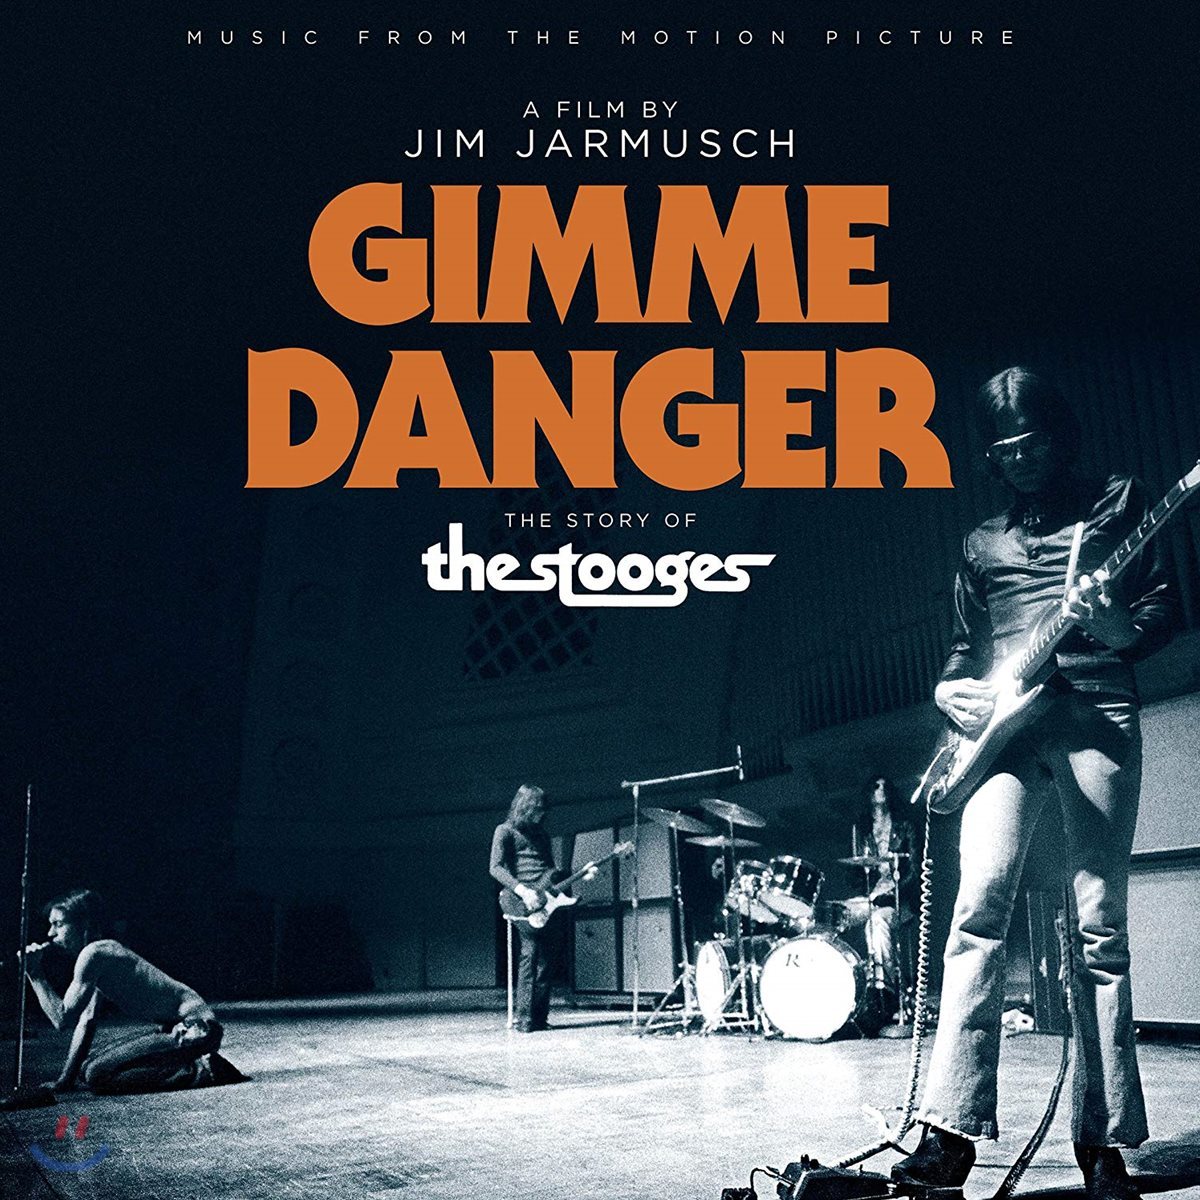 짐 자무쉬 감독의 다큐멘터리 &#39;김미 데인저: 스투지스 스토리&#39; 음악 (Jim Jarmusch &#39;Gimme Danger: The Story of The Stooges&#39; OST)